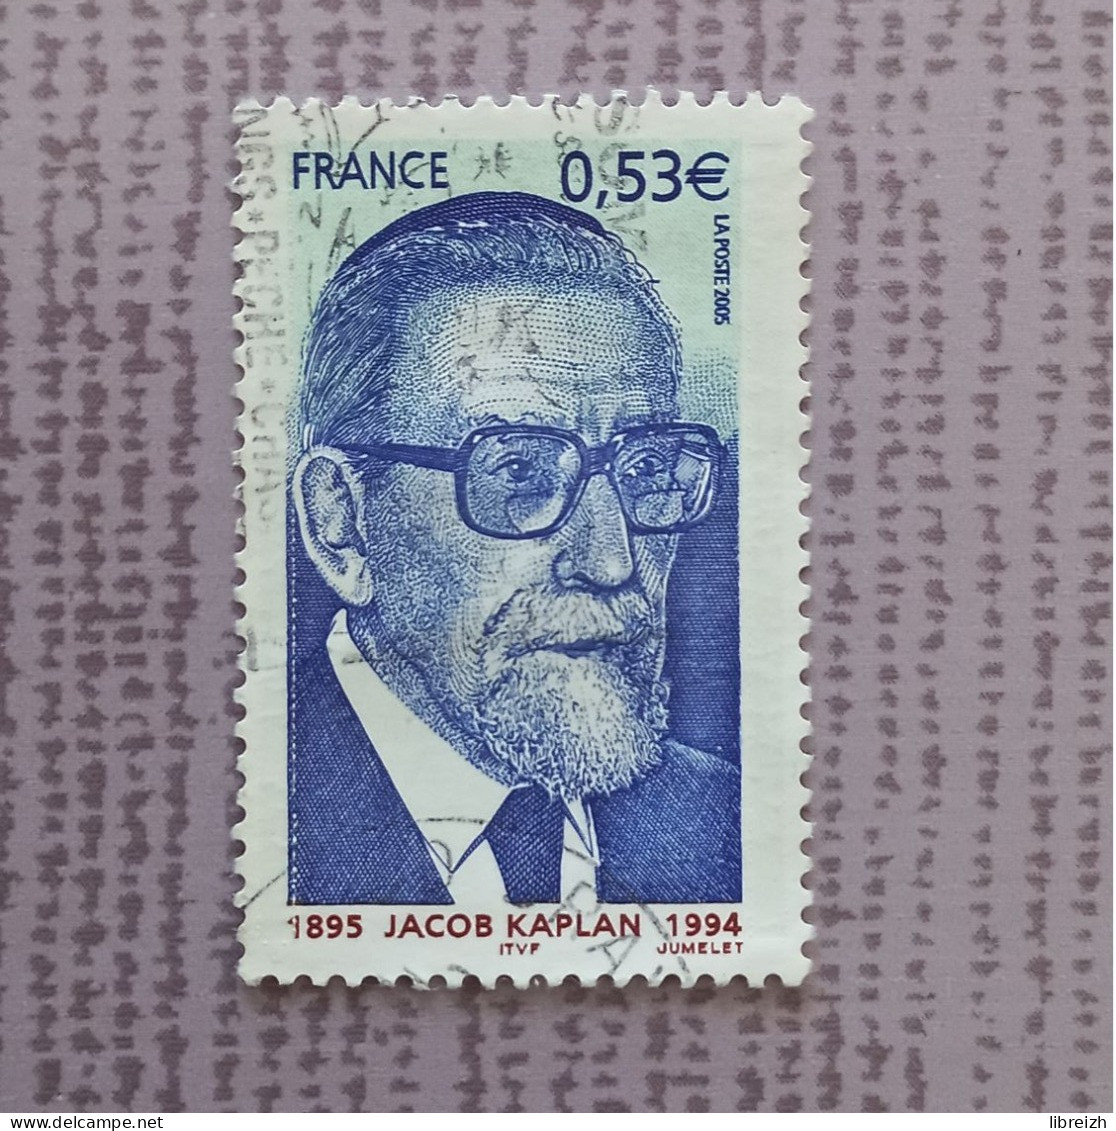 Jacob Kaplan  N° 3859  Année 2005 - Used Stamps